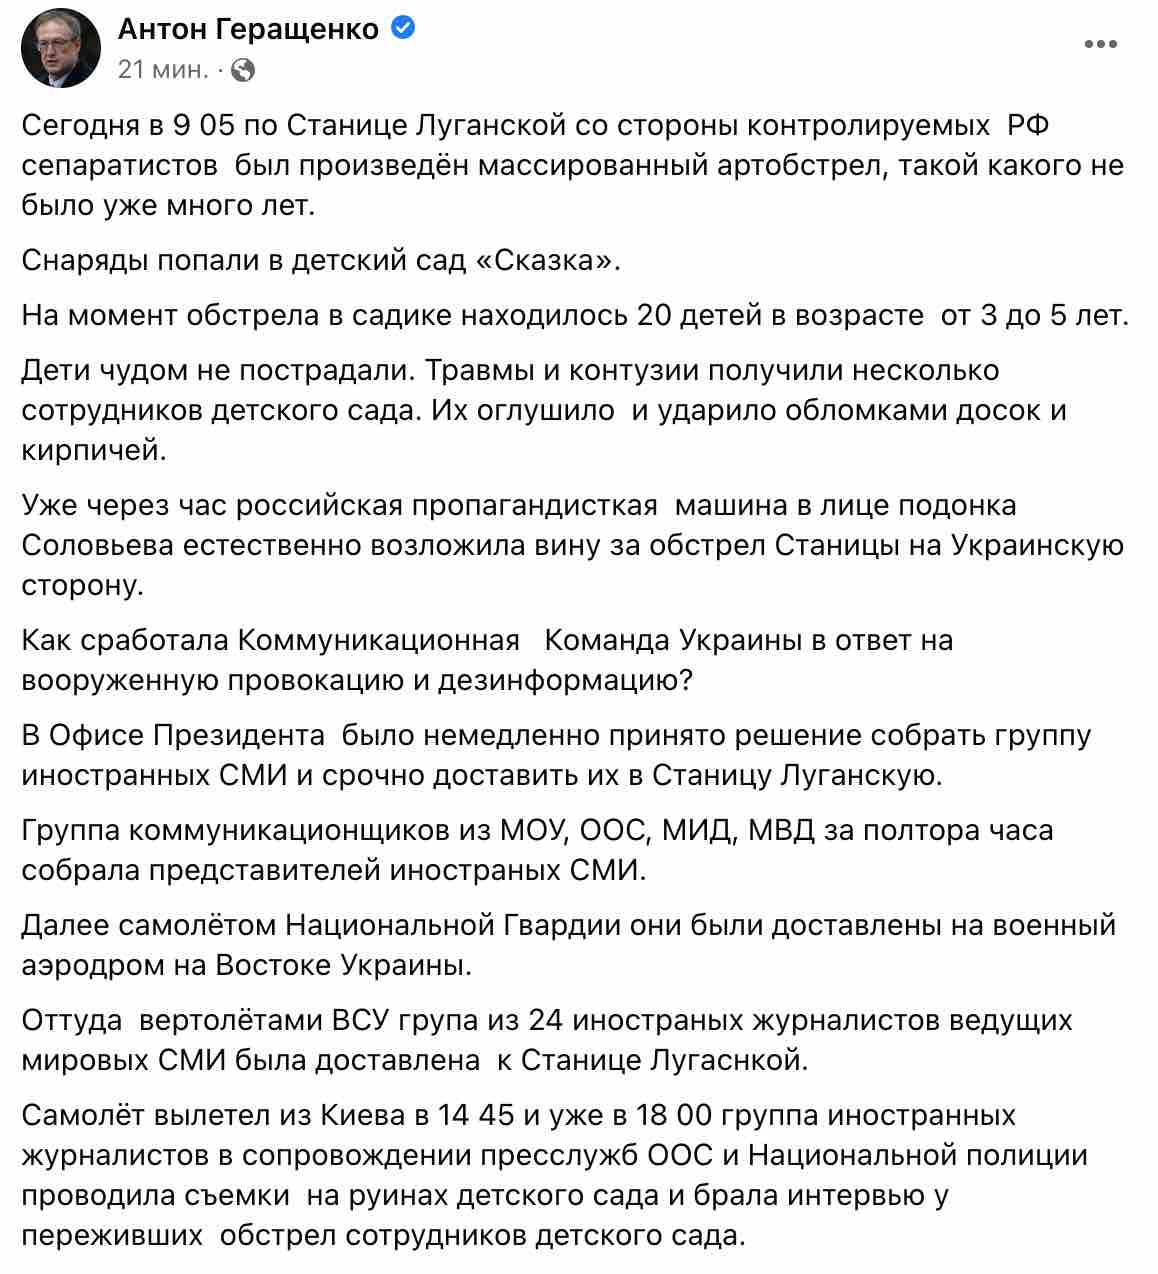 Обстрел Станицы Луганской. В ответ на фейки РФ Украина отвезла в Станицу иностранные СМИ